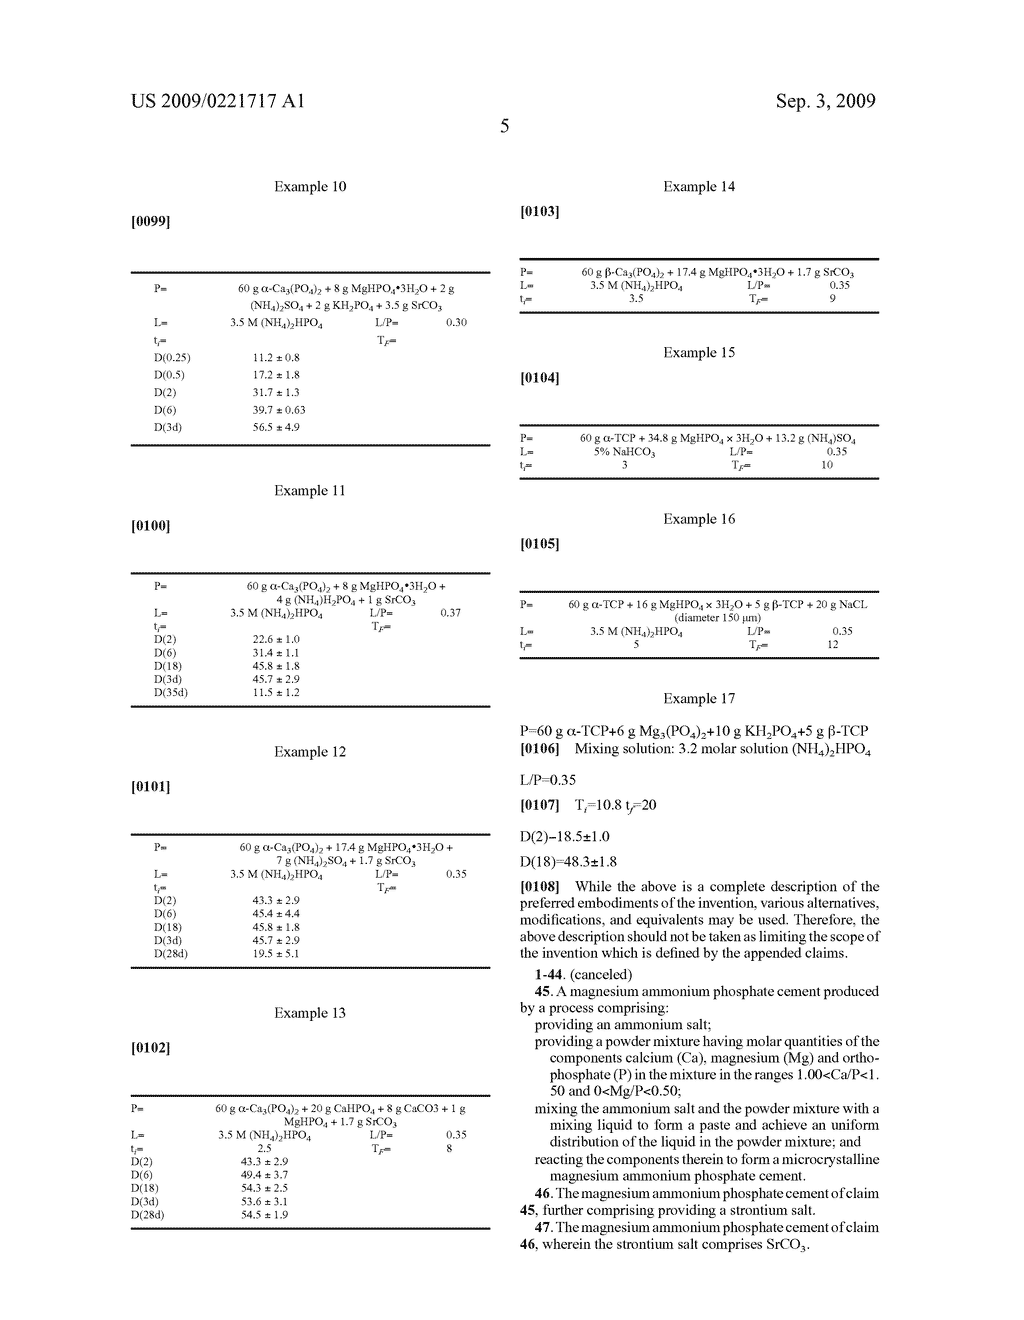 MAGNESIUM AMMONIUM PHOSPHATE CEMENT COMPOSITION - diagram, schematic, and image 06